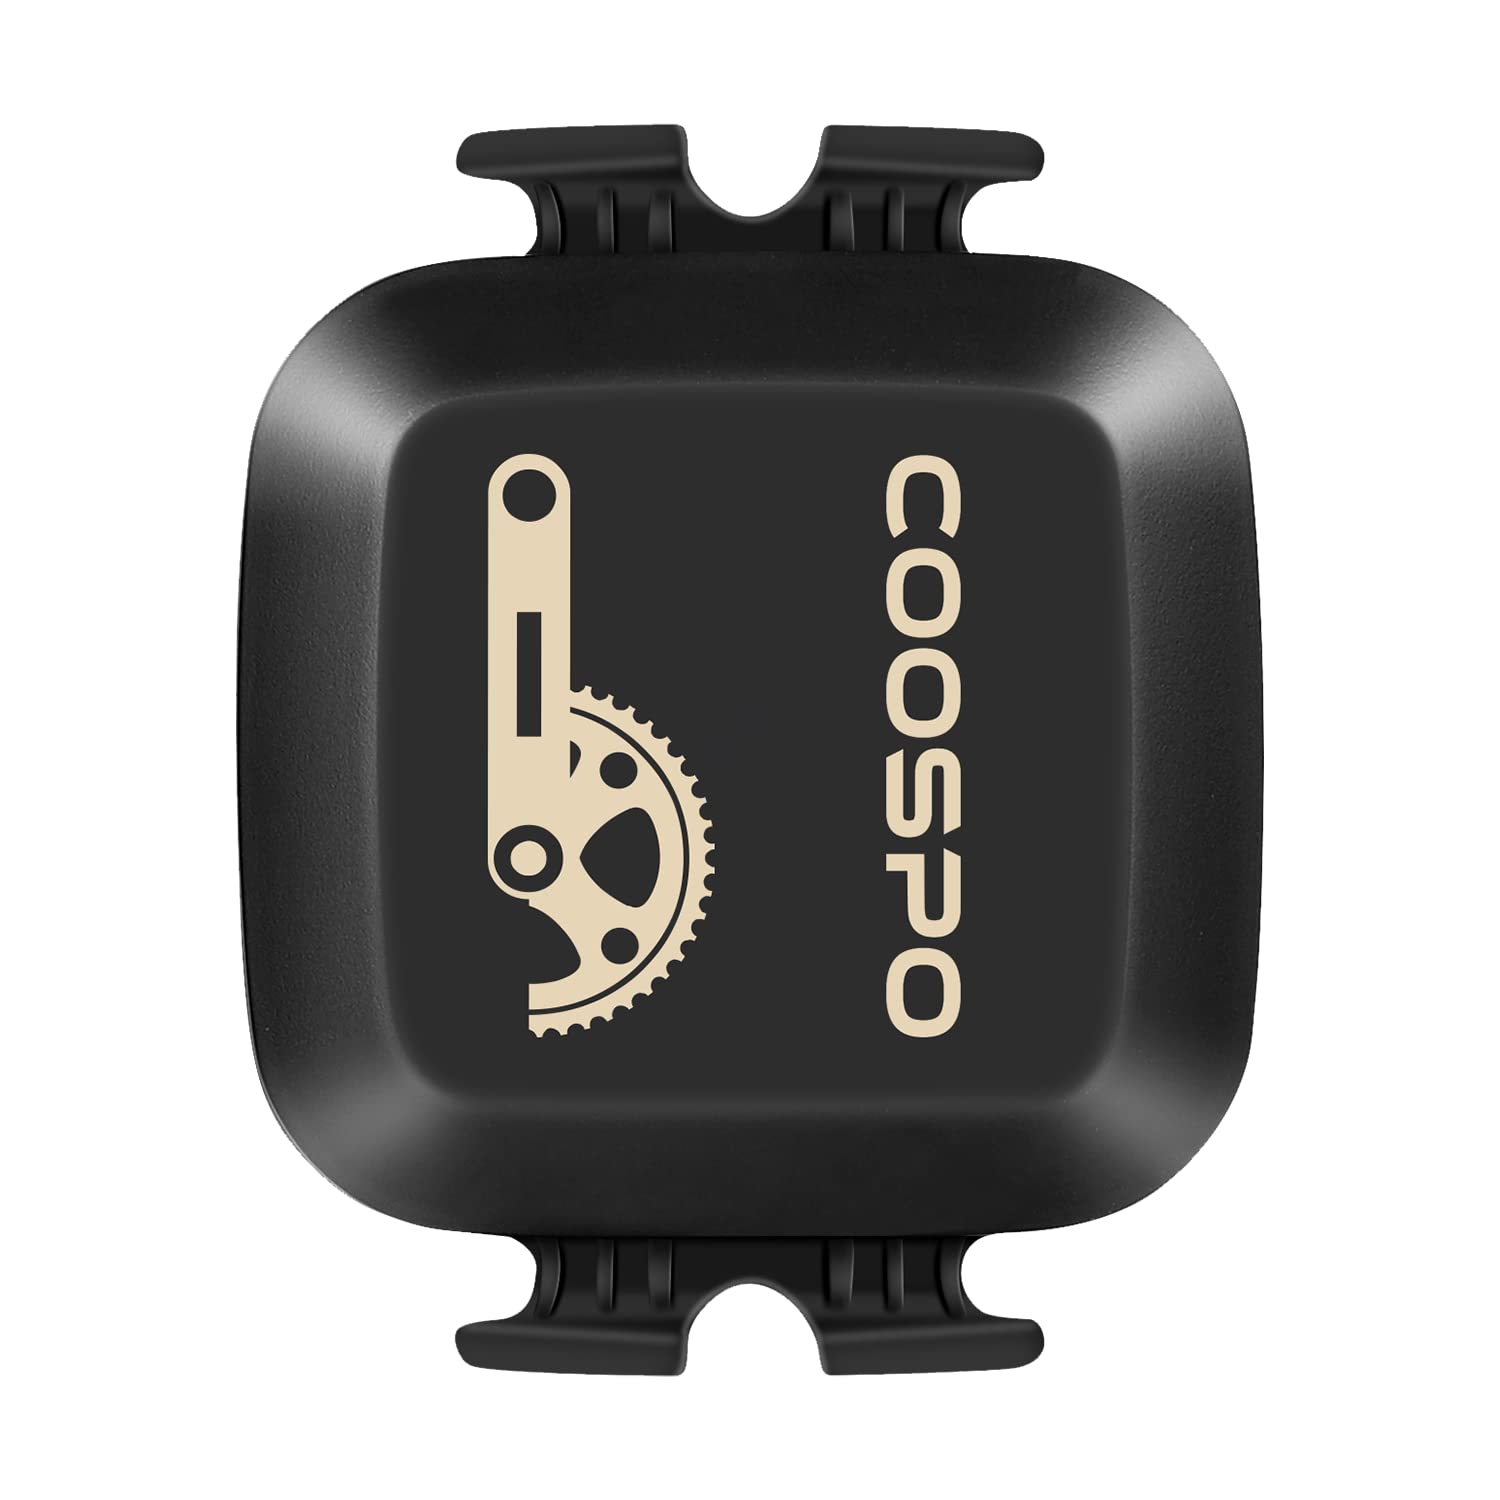 COOSPO ケイデンススピードセンサー ANT+ Bluetooth 4.0対応接続 自転車コンピュータ用 バイクアクセサ..